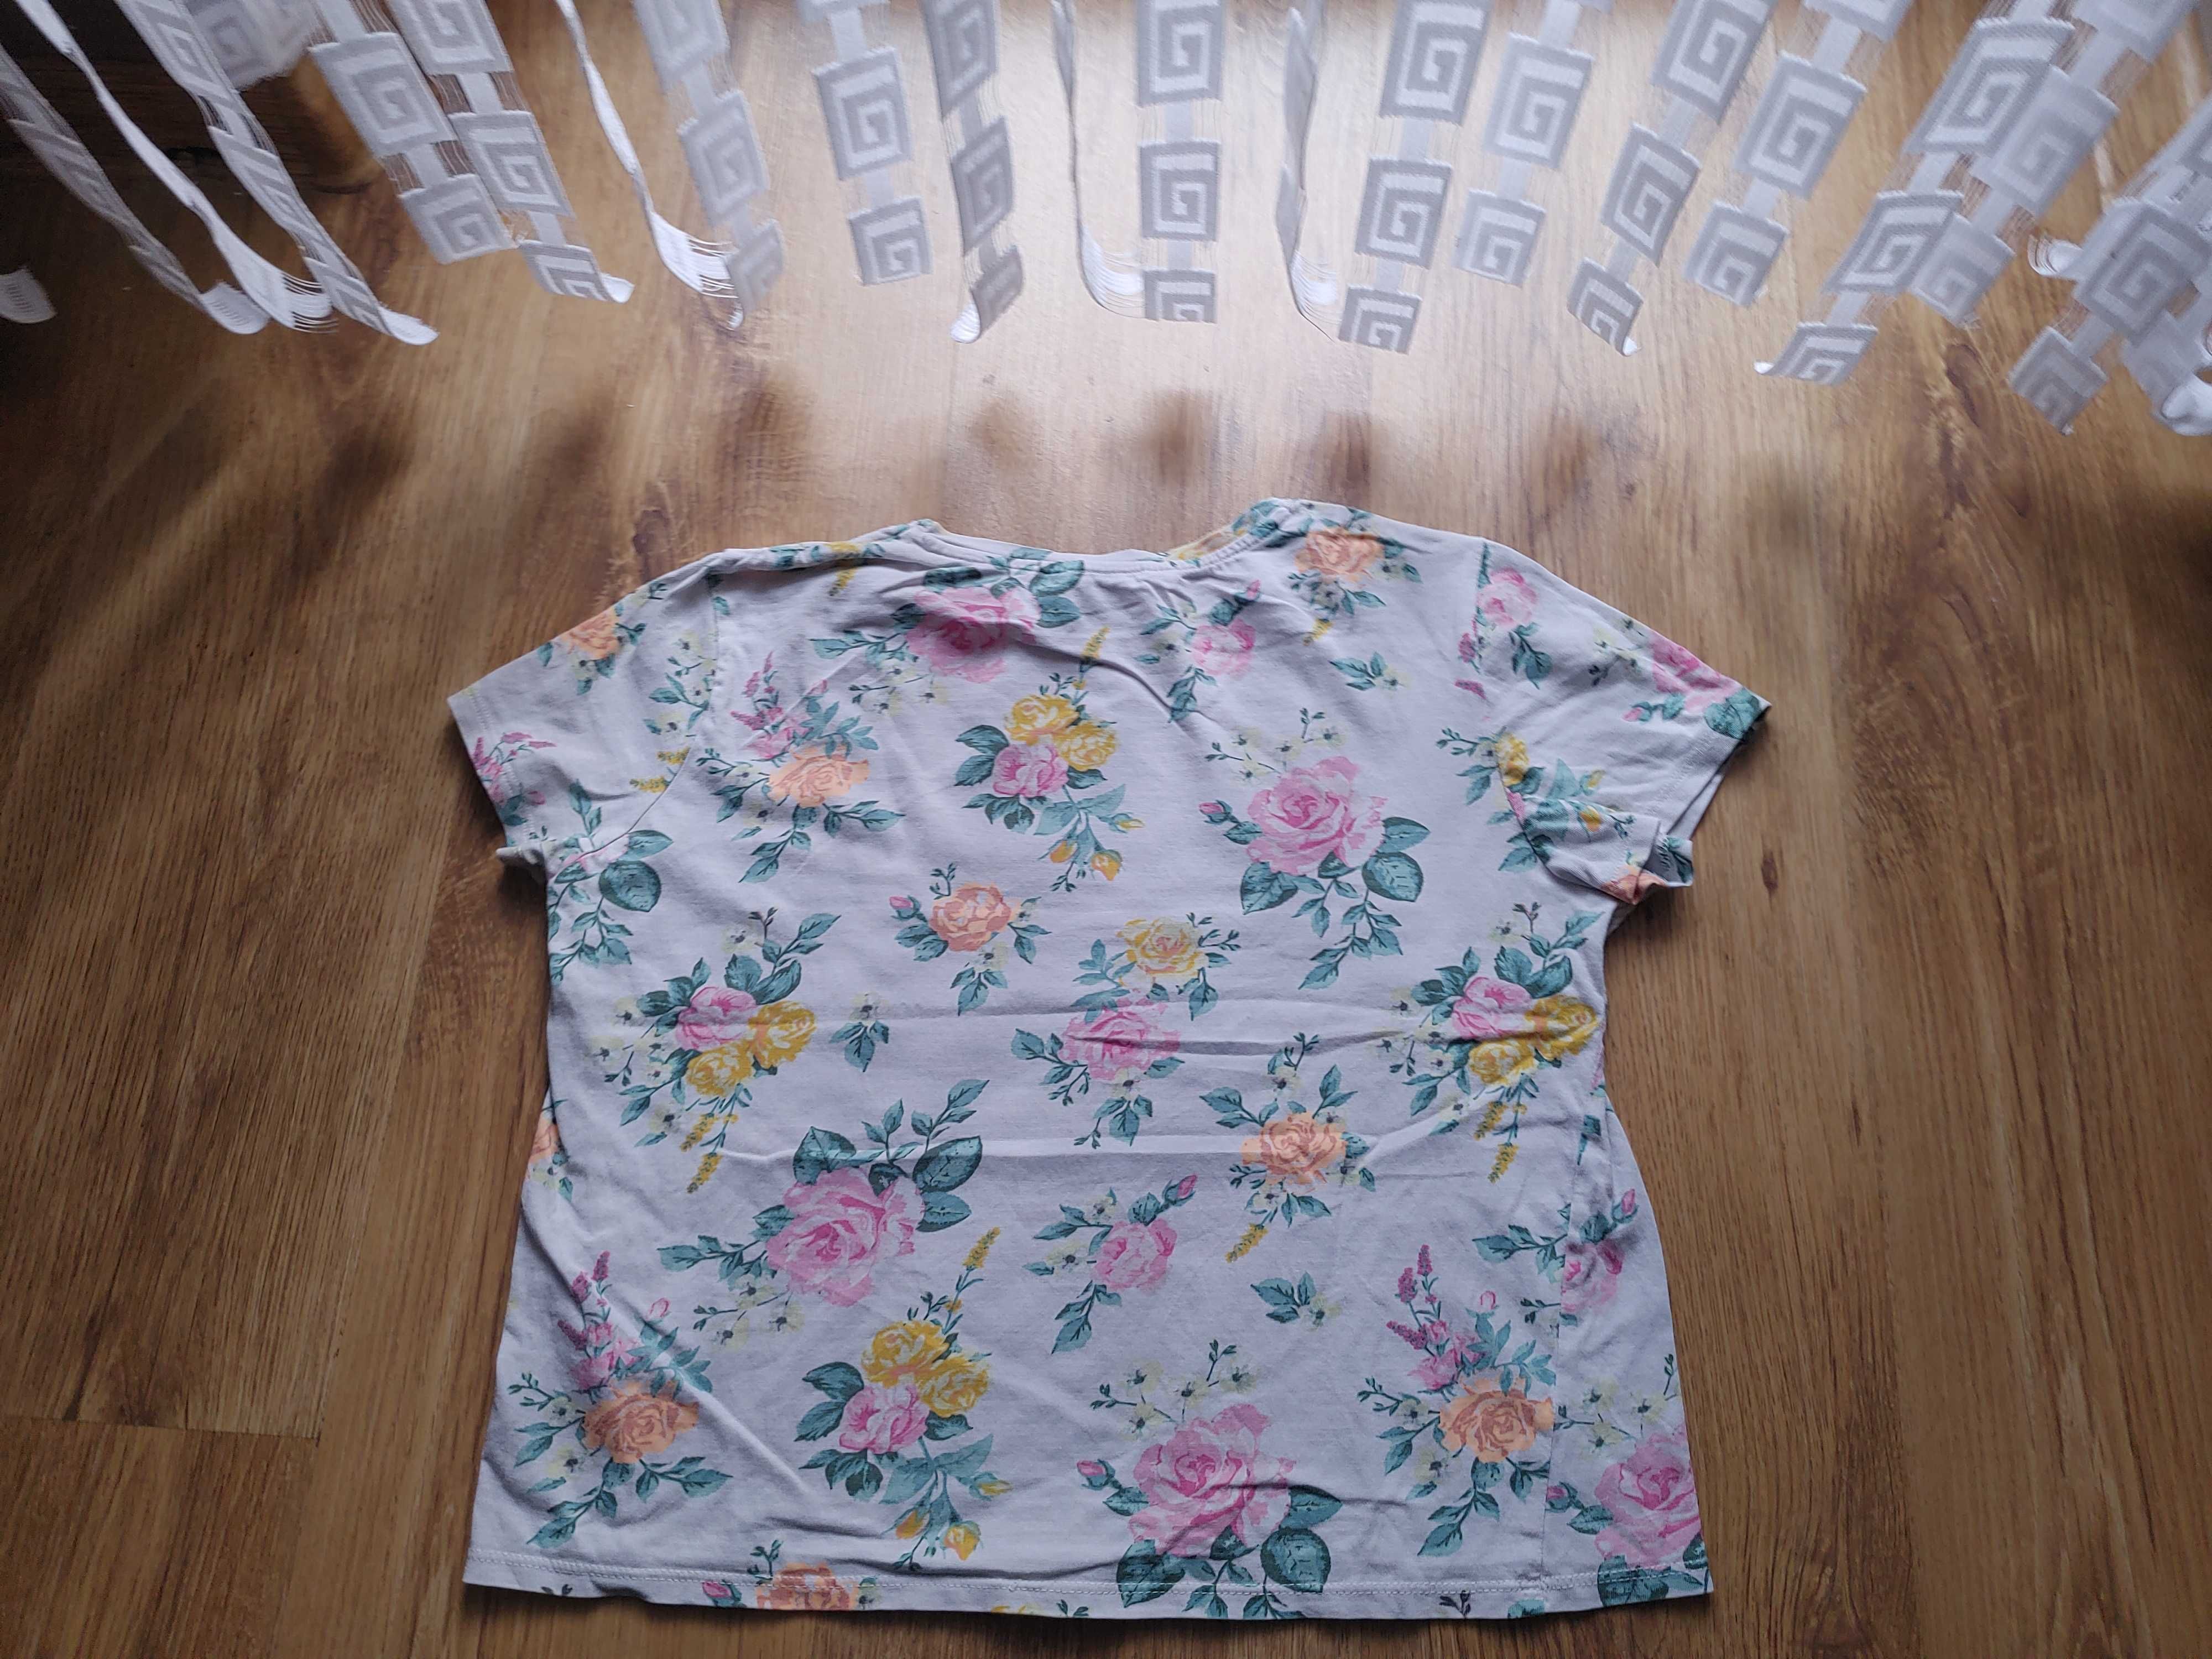 H&M biała t-shirt w kwiaty 146/152cm 8-9l bdb